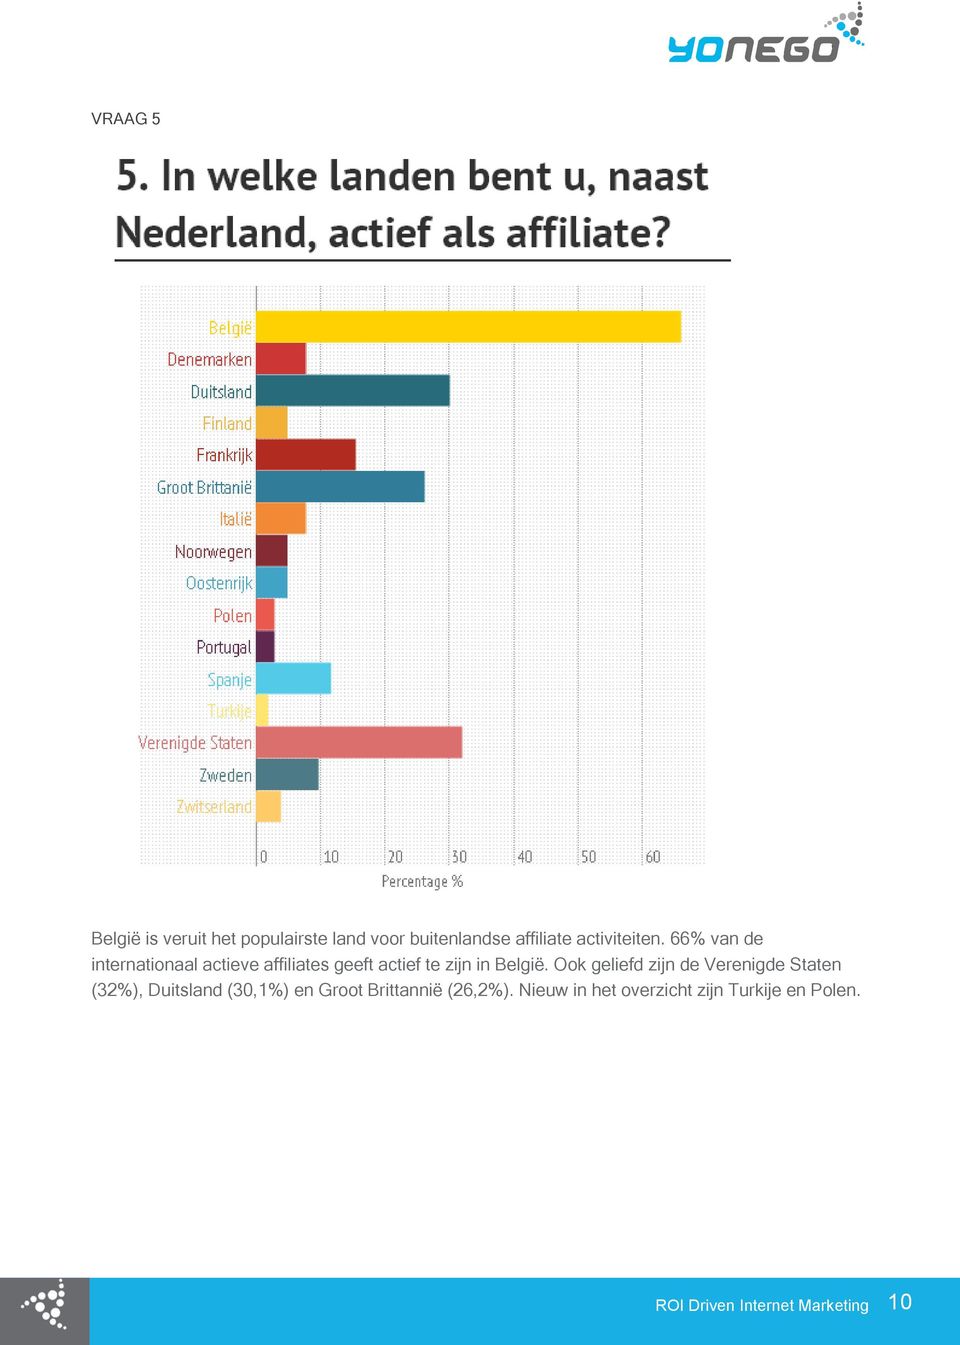 66% van de internationaal actieve affiliates geeft actief te zijn in België.